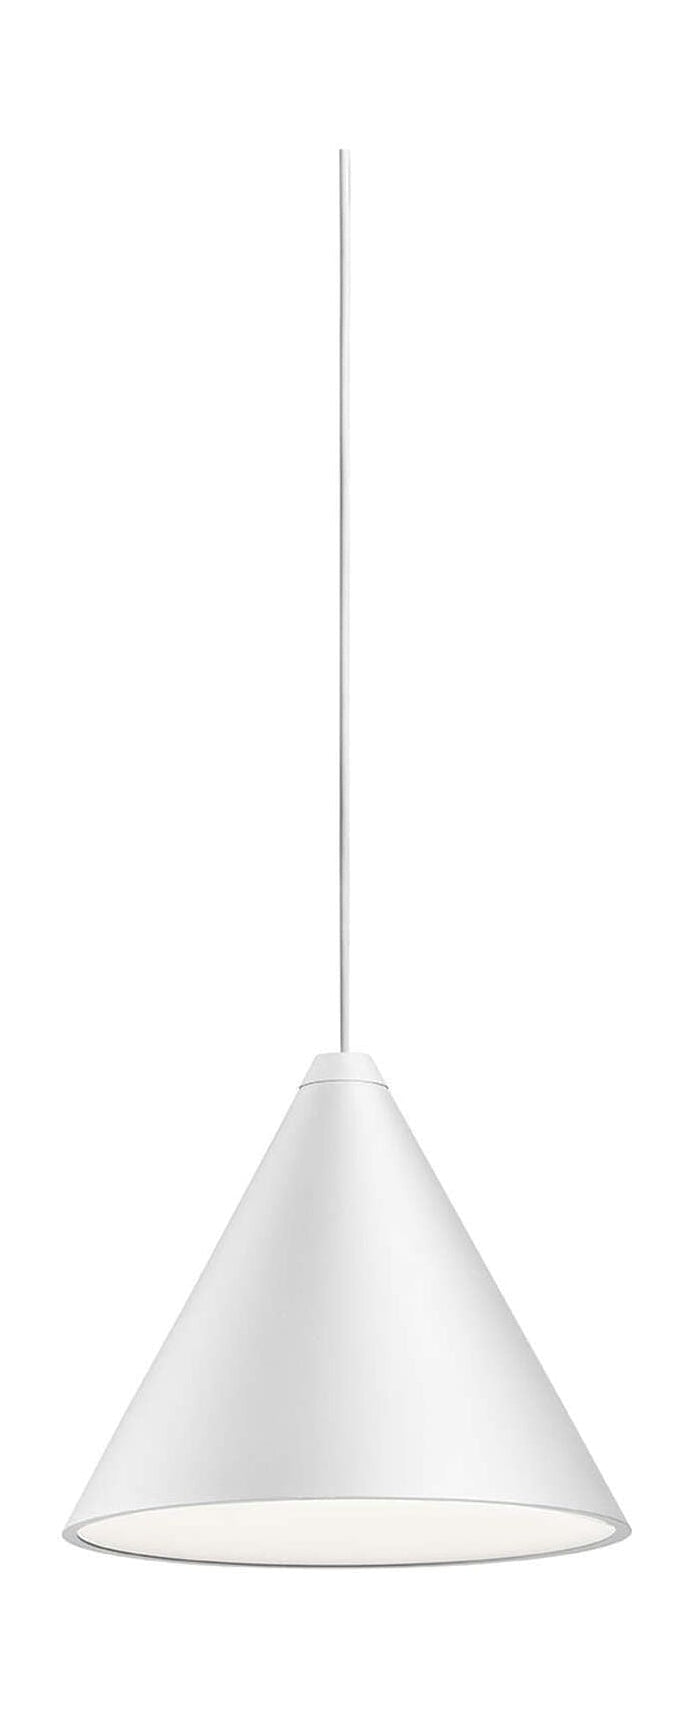 Lampa wisiorka na głowicę stożkową FLOS Bluetooth 12 m, biały